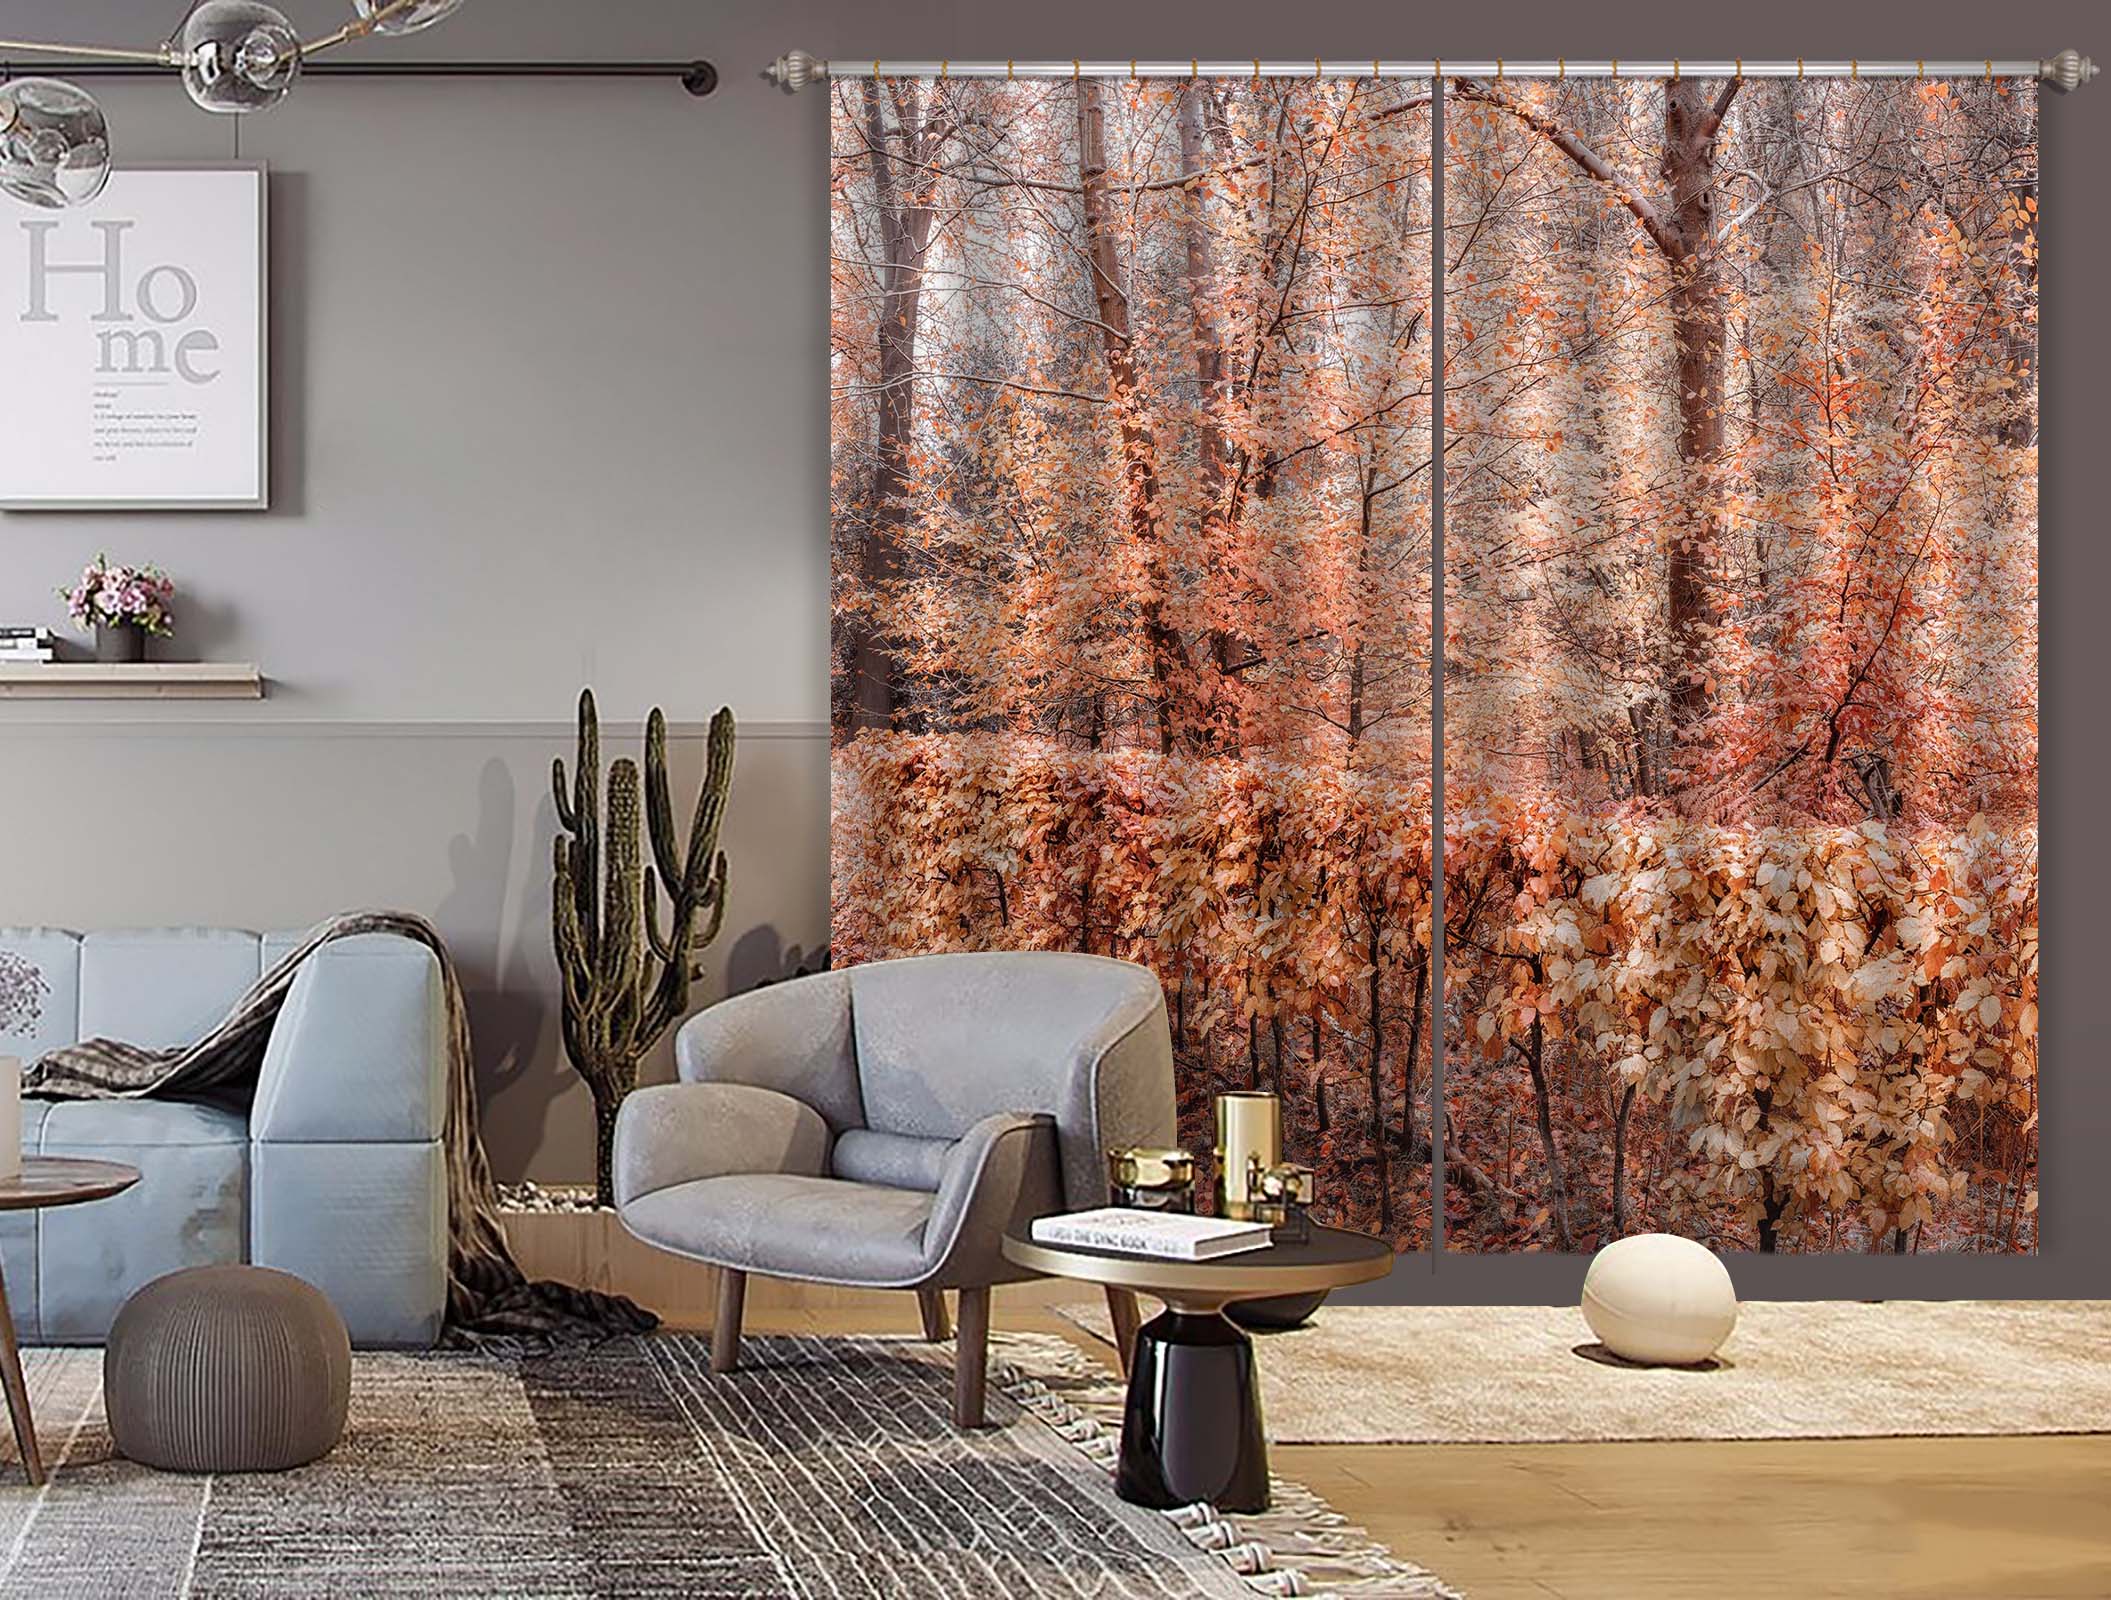 3D Autumn Leaves 6335 Assaf Frank Curtain Curtains Drapes